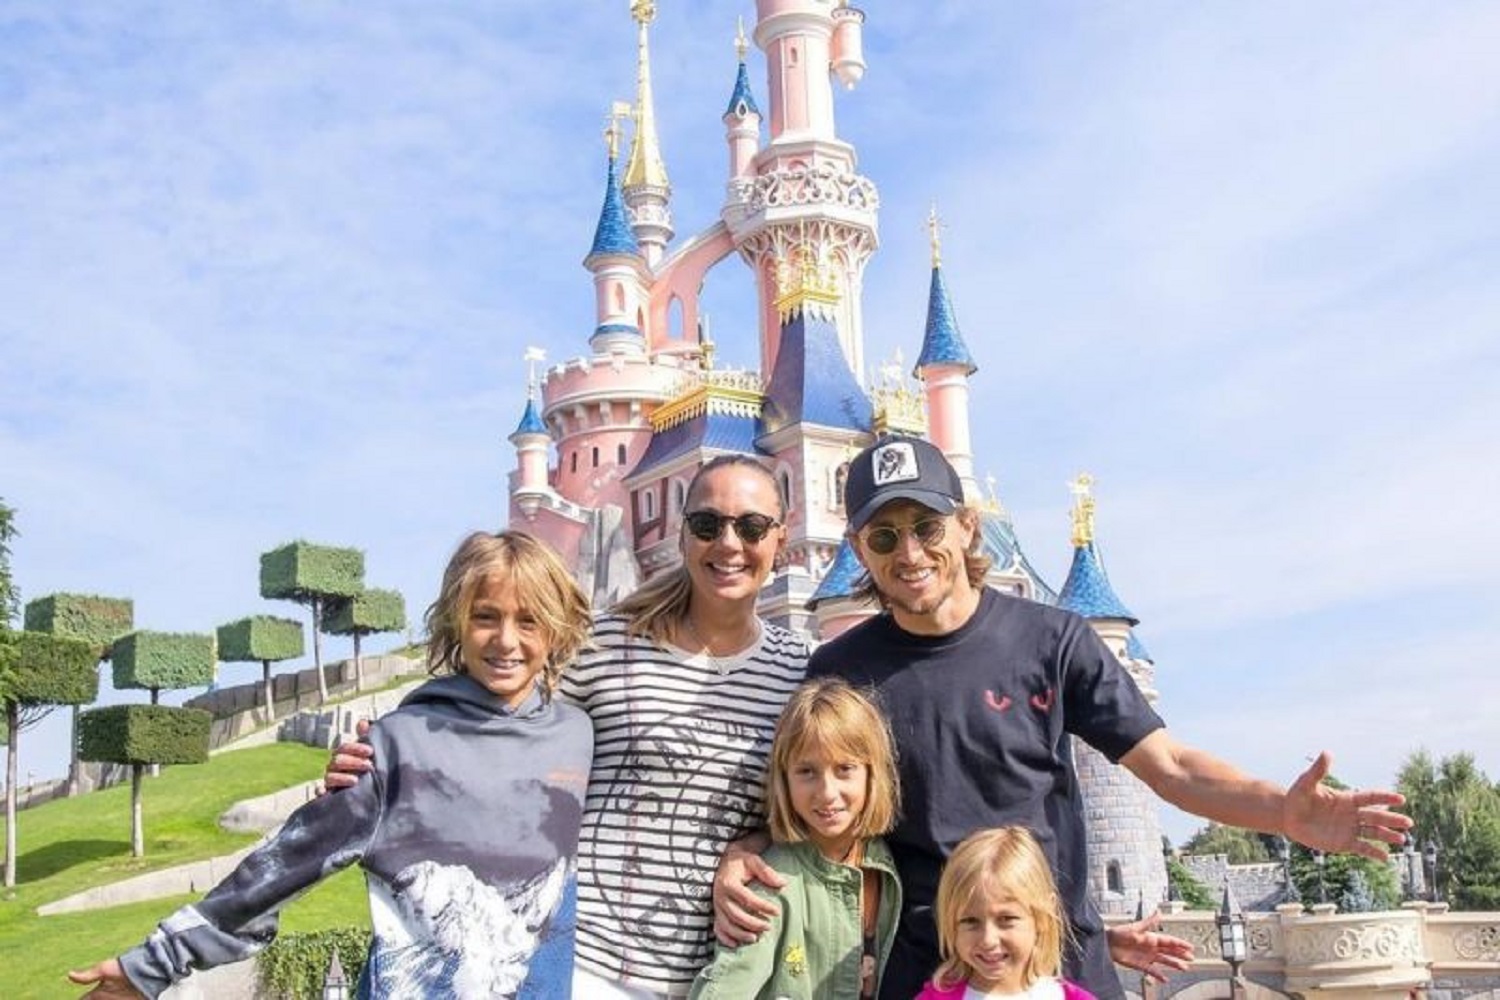 عکس؛ مودریچ به همراه همسر و فرزندانش در دیزنی لند پاریس